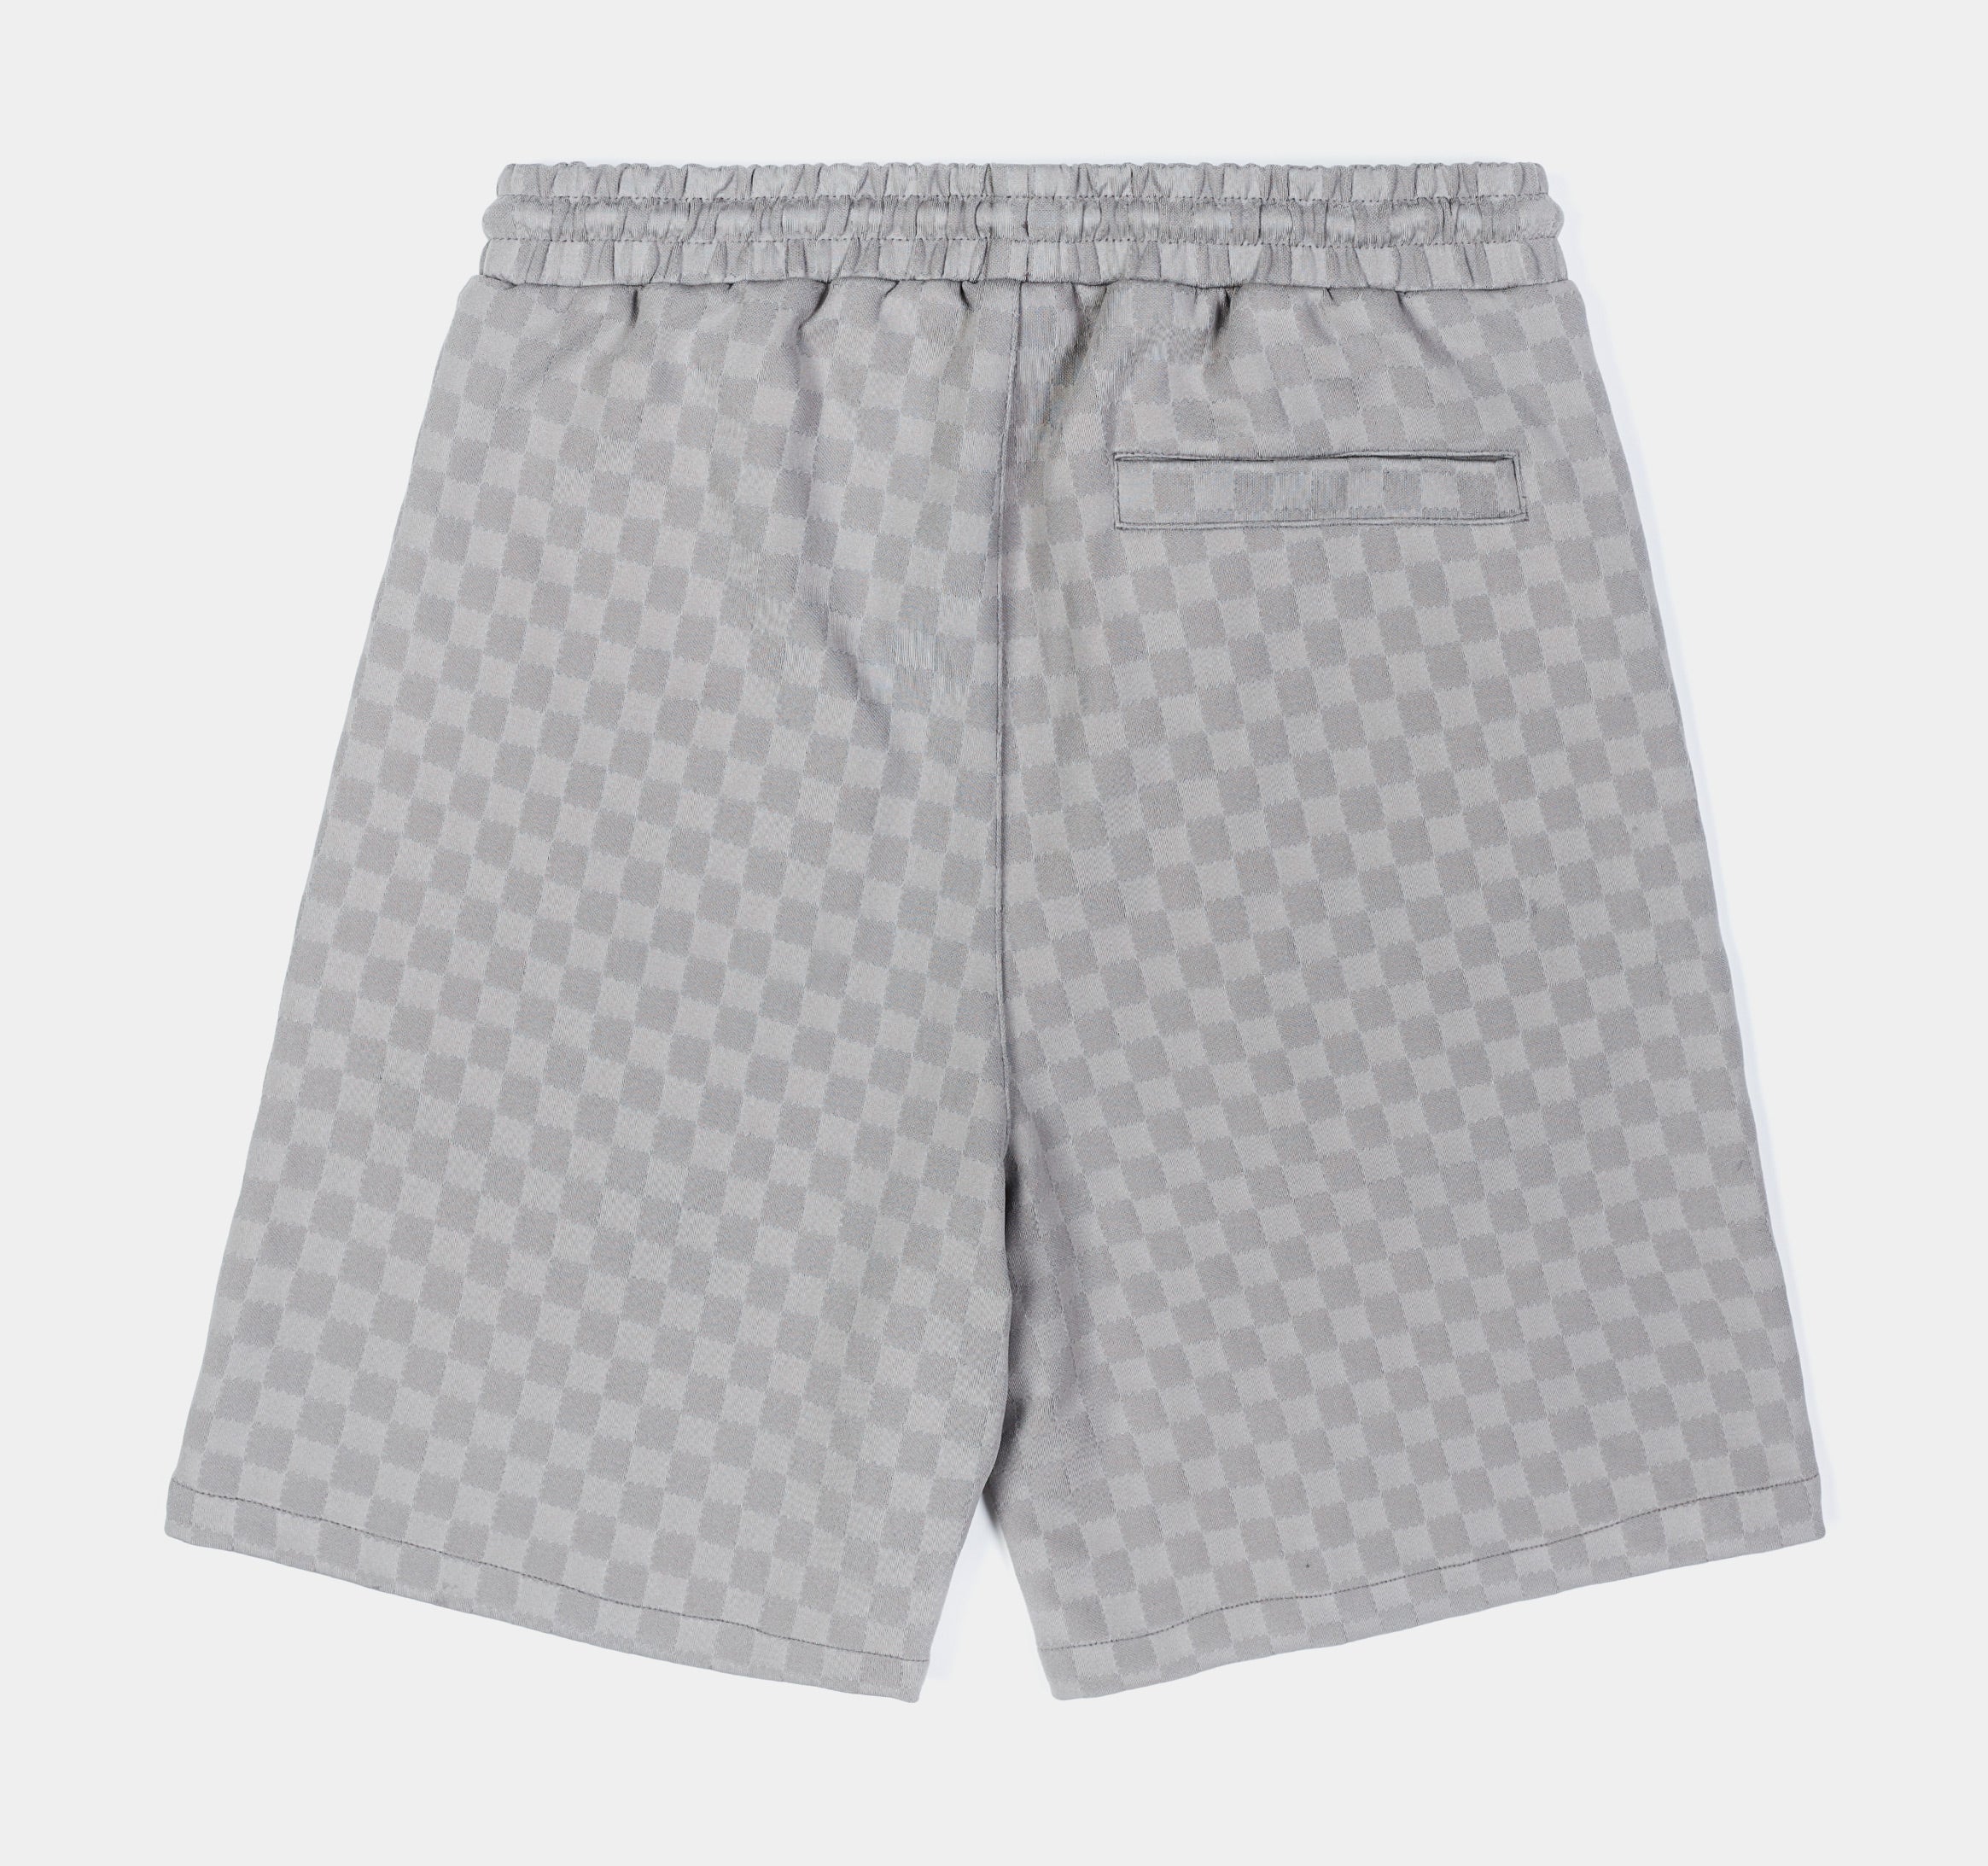 Checkered Knit Mens Shorts (Grey)